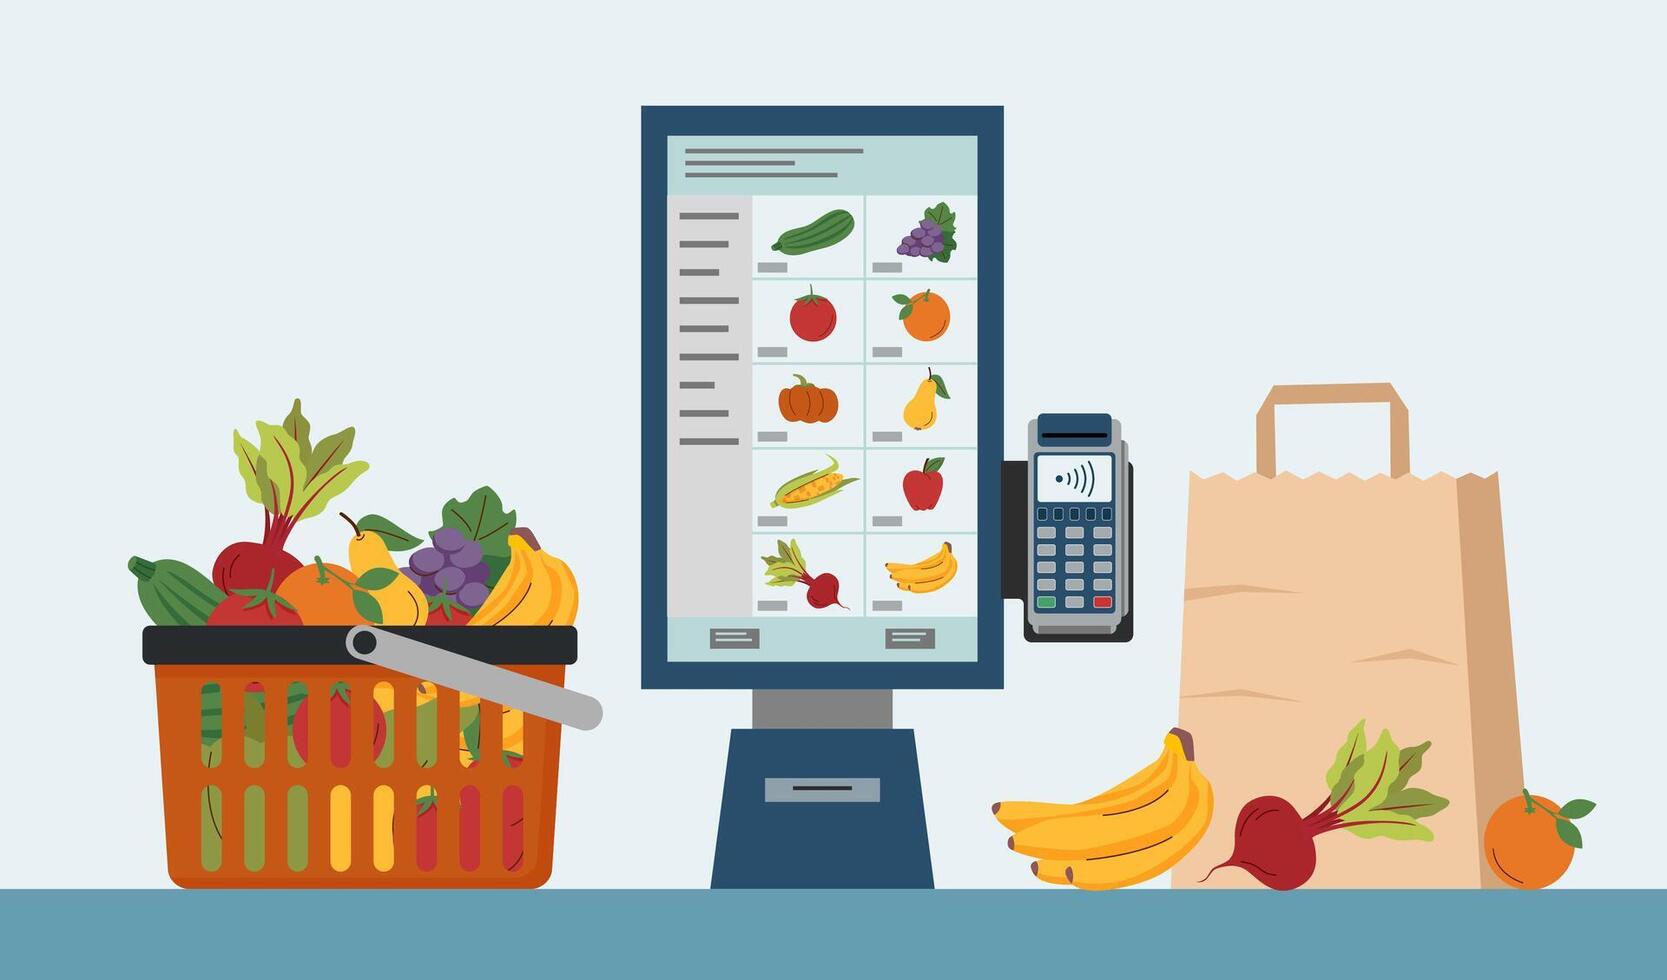 comida quiosco para yo ordenar y yo pago, compras cesta con Fruta y vegetales y compras bolsa. comida compras concepto. tecnología concepto. vector